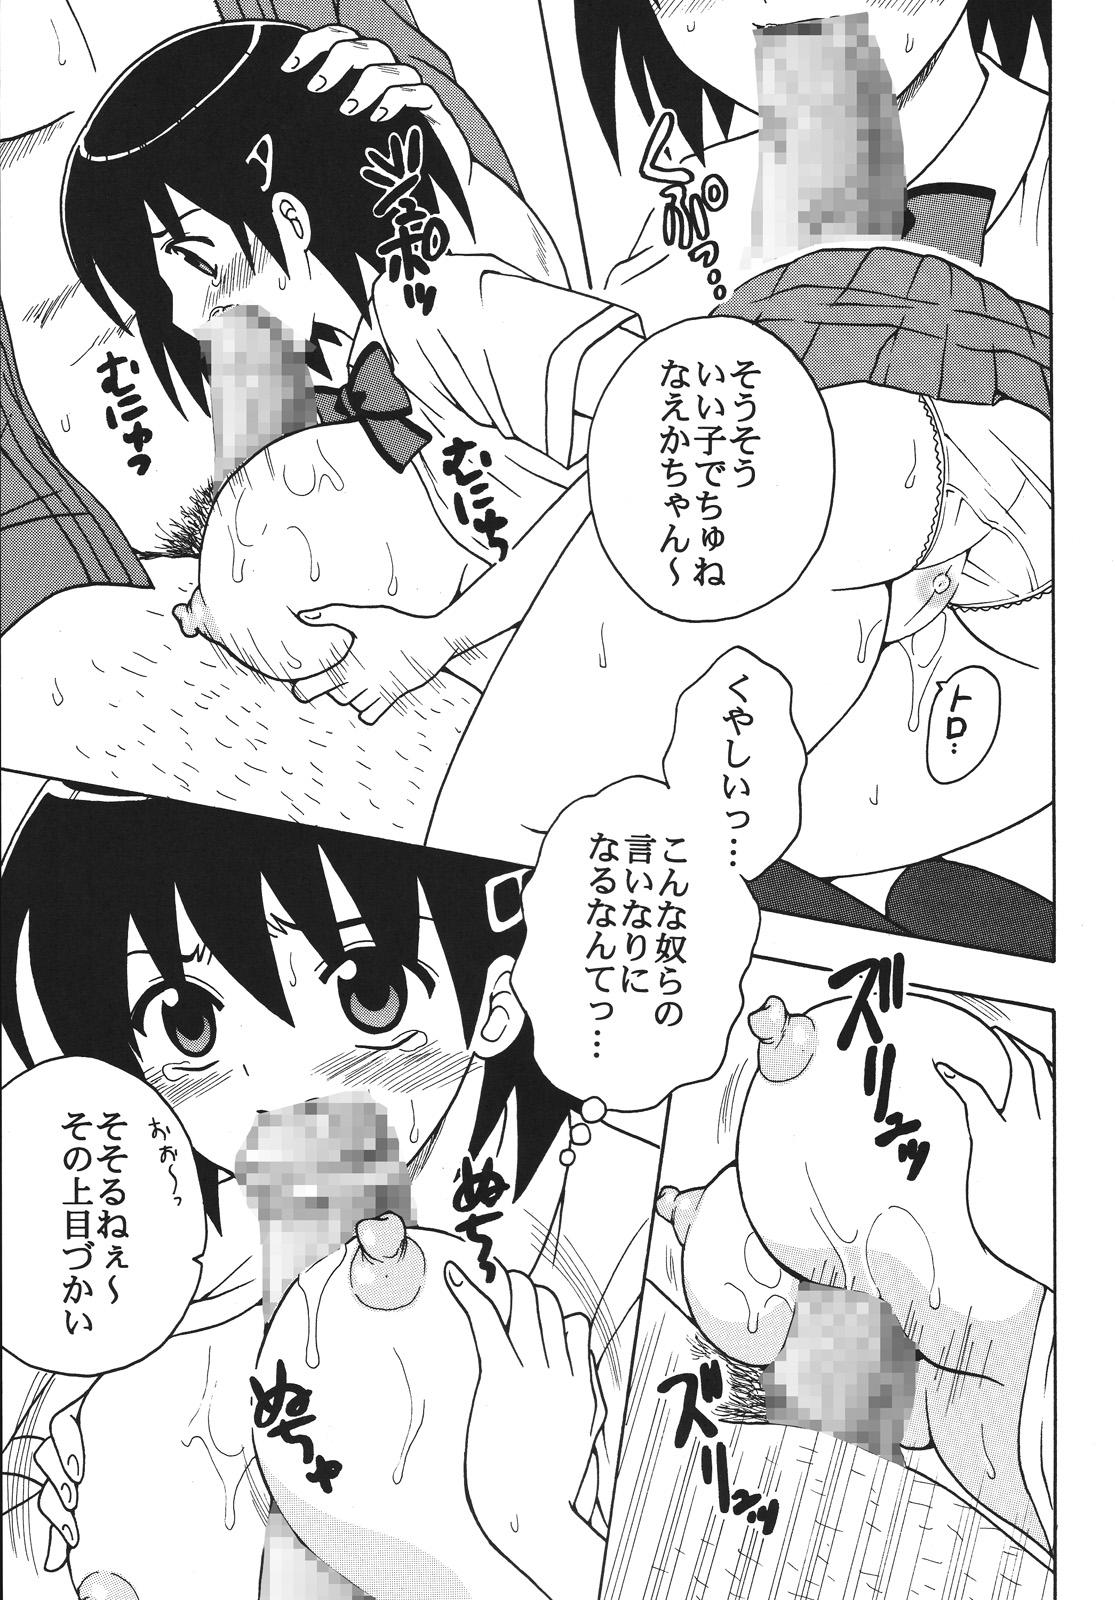 Salope Nakadashi Maid no Hinkaku 1 - Kamen no maid guy Stepdaughter - Page 8